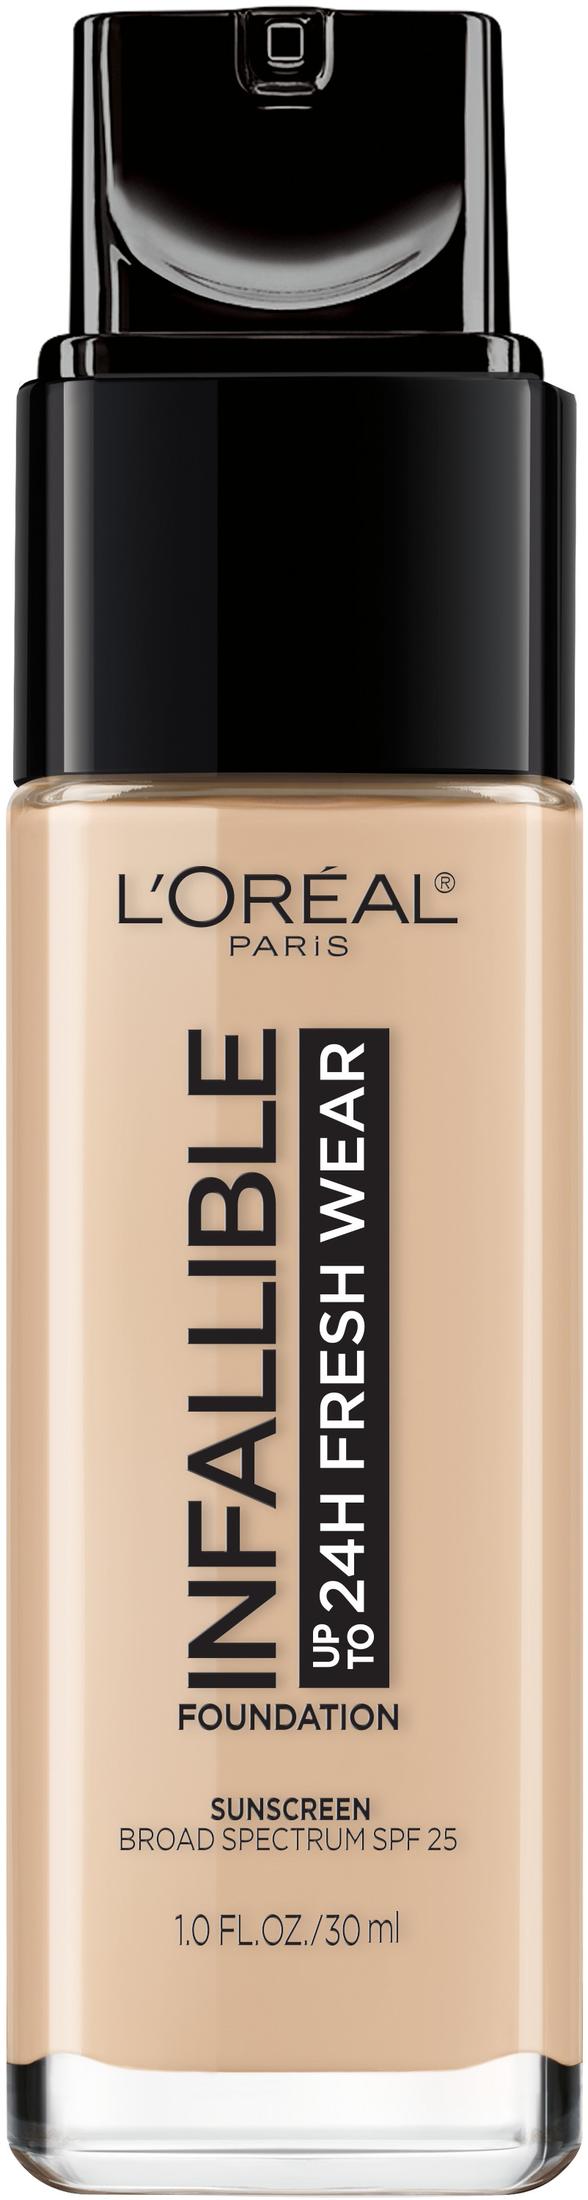 L'Oreal Paris Infallible Fresh Wear 24 Hr Liquid Foundation Makeup, 420 True Beige, 1 fl oz - image 3 of 11